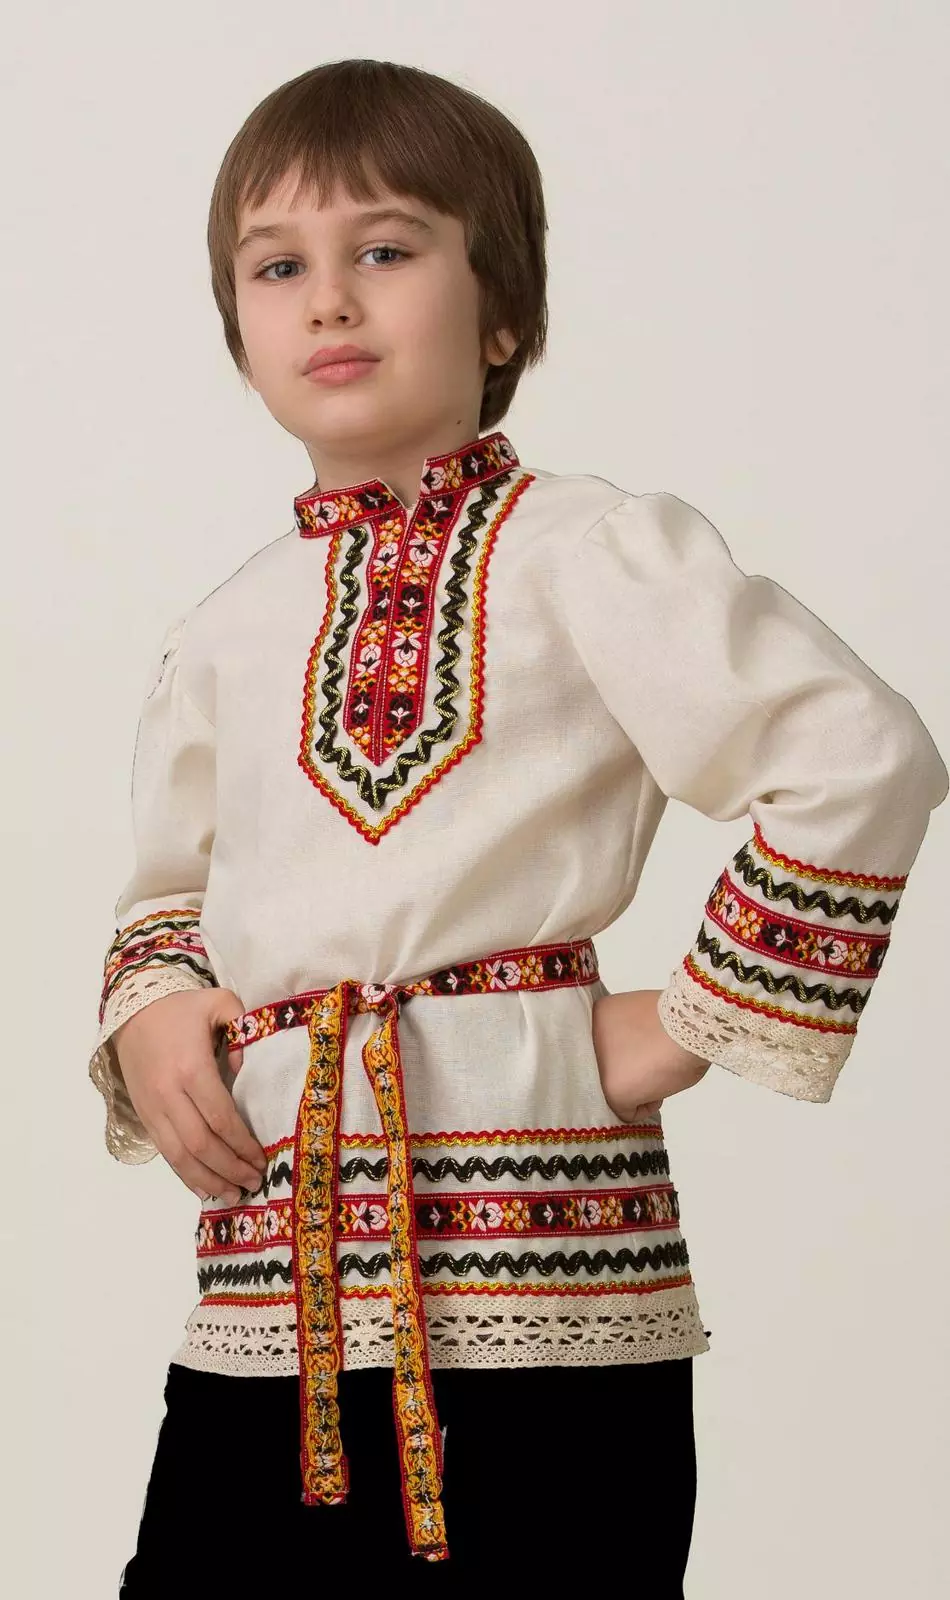 Славянский костюм рубашка вышиванка (5603-1)